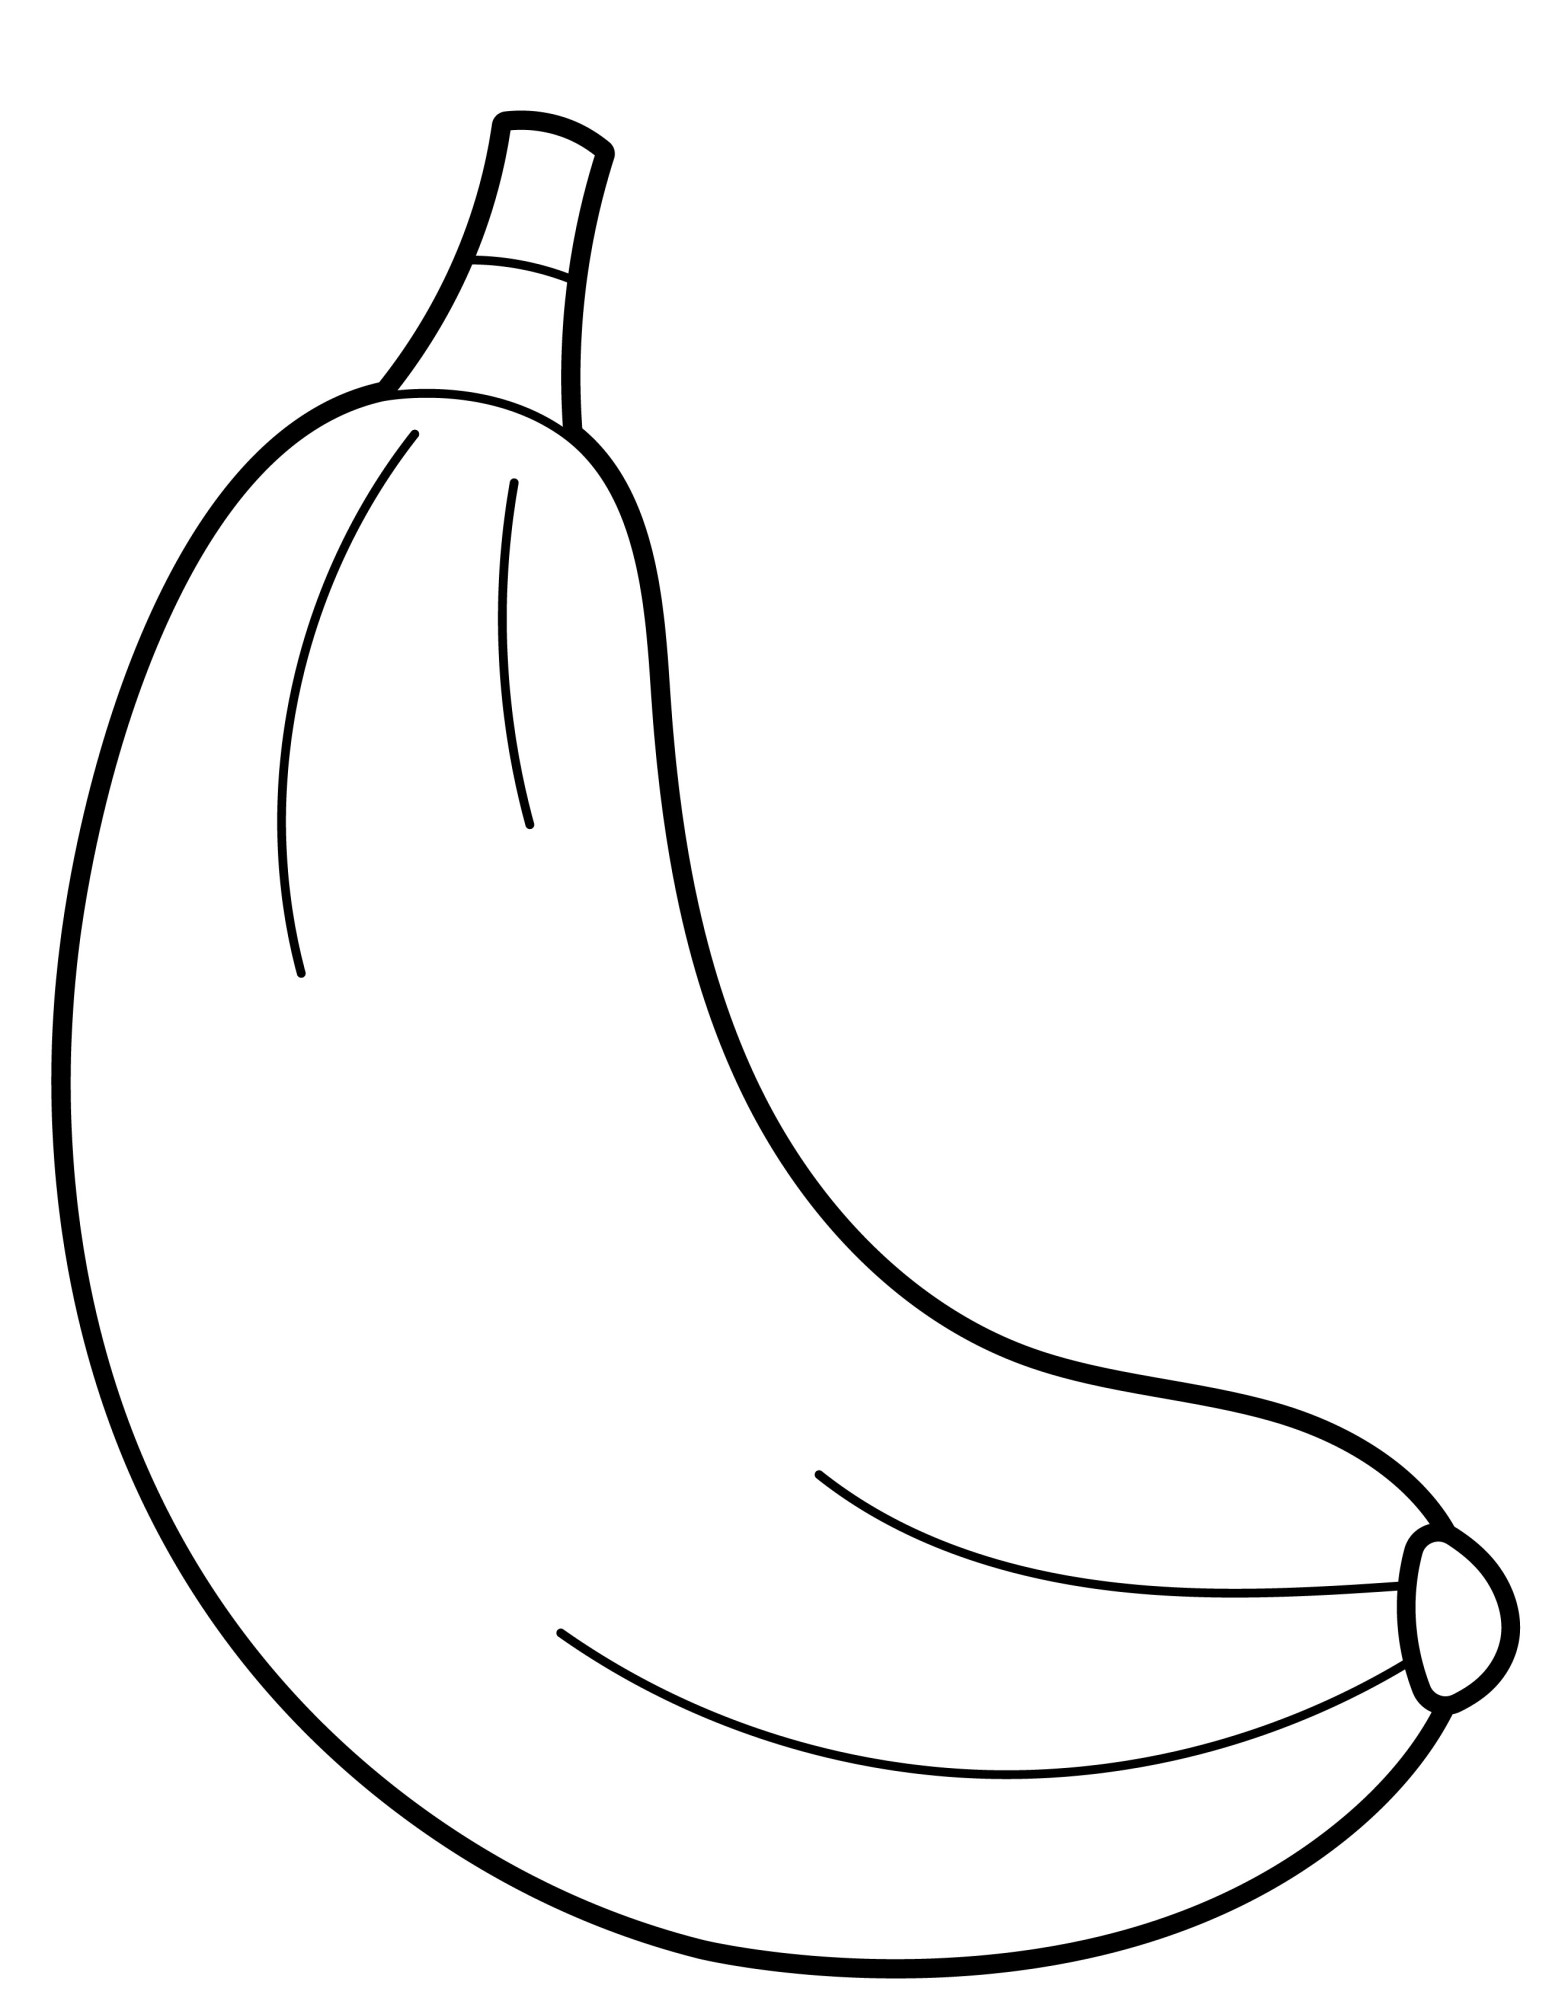 Раскраска для детей: банан